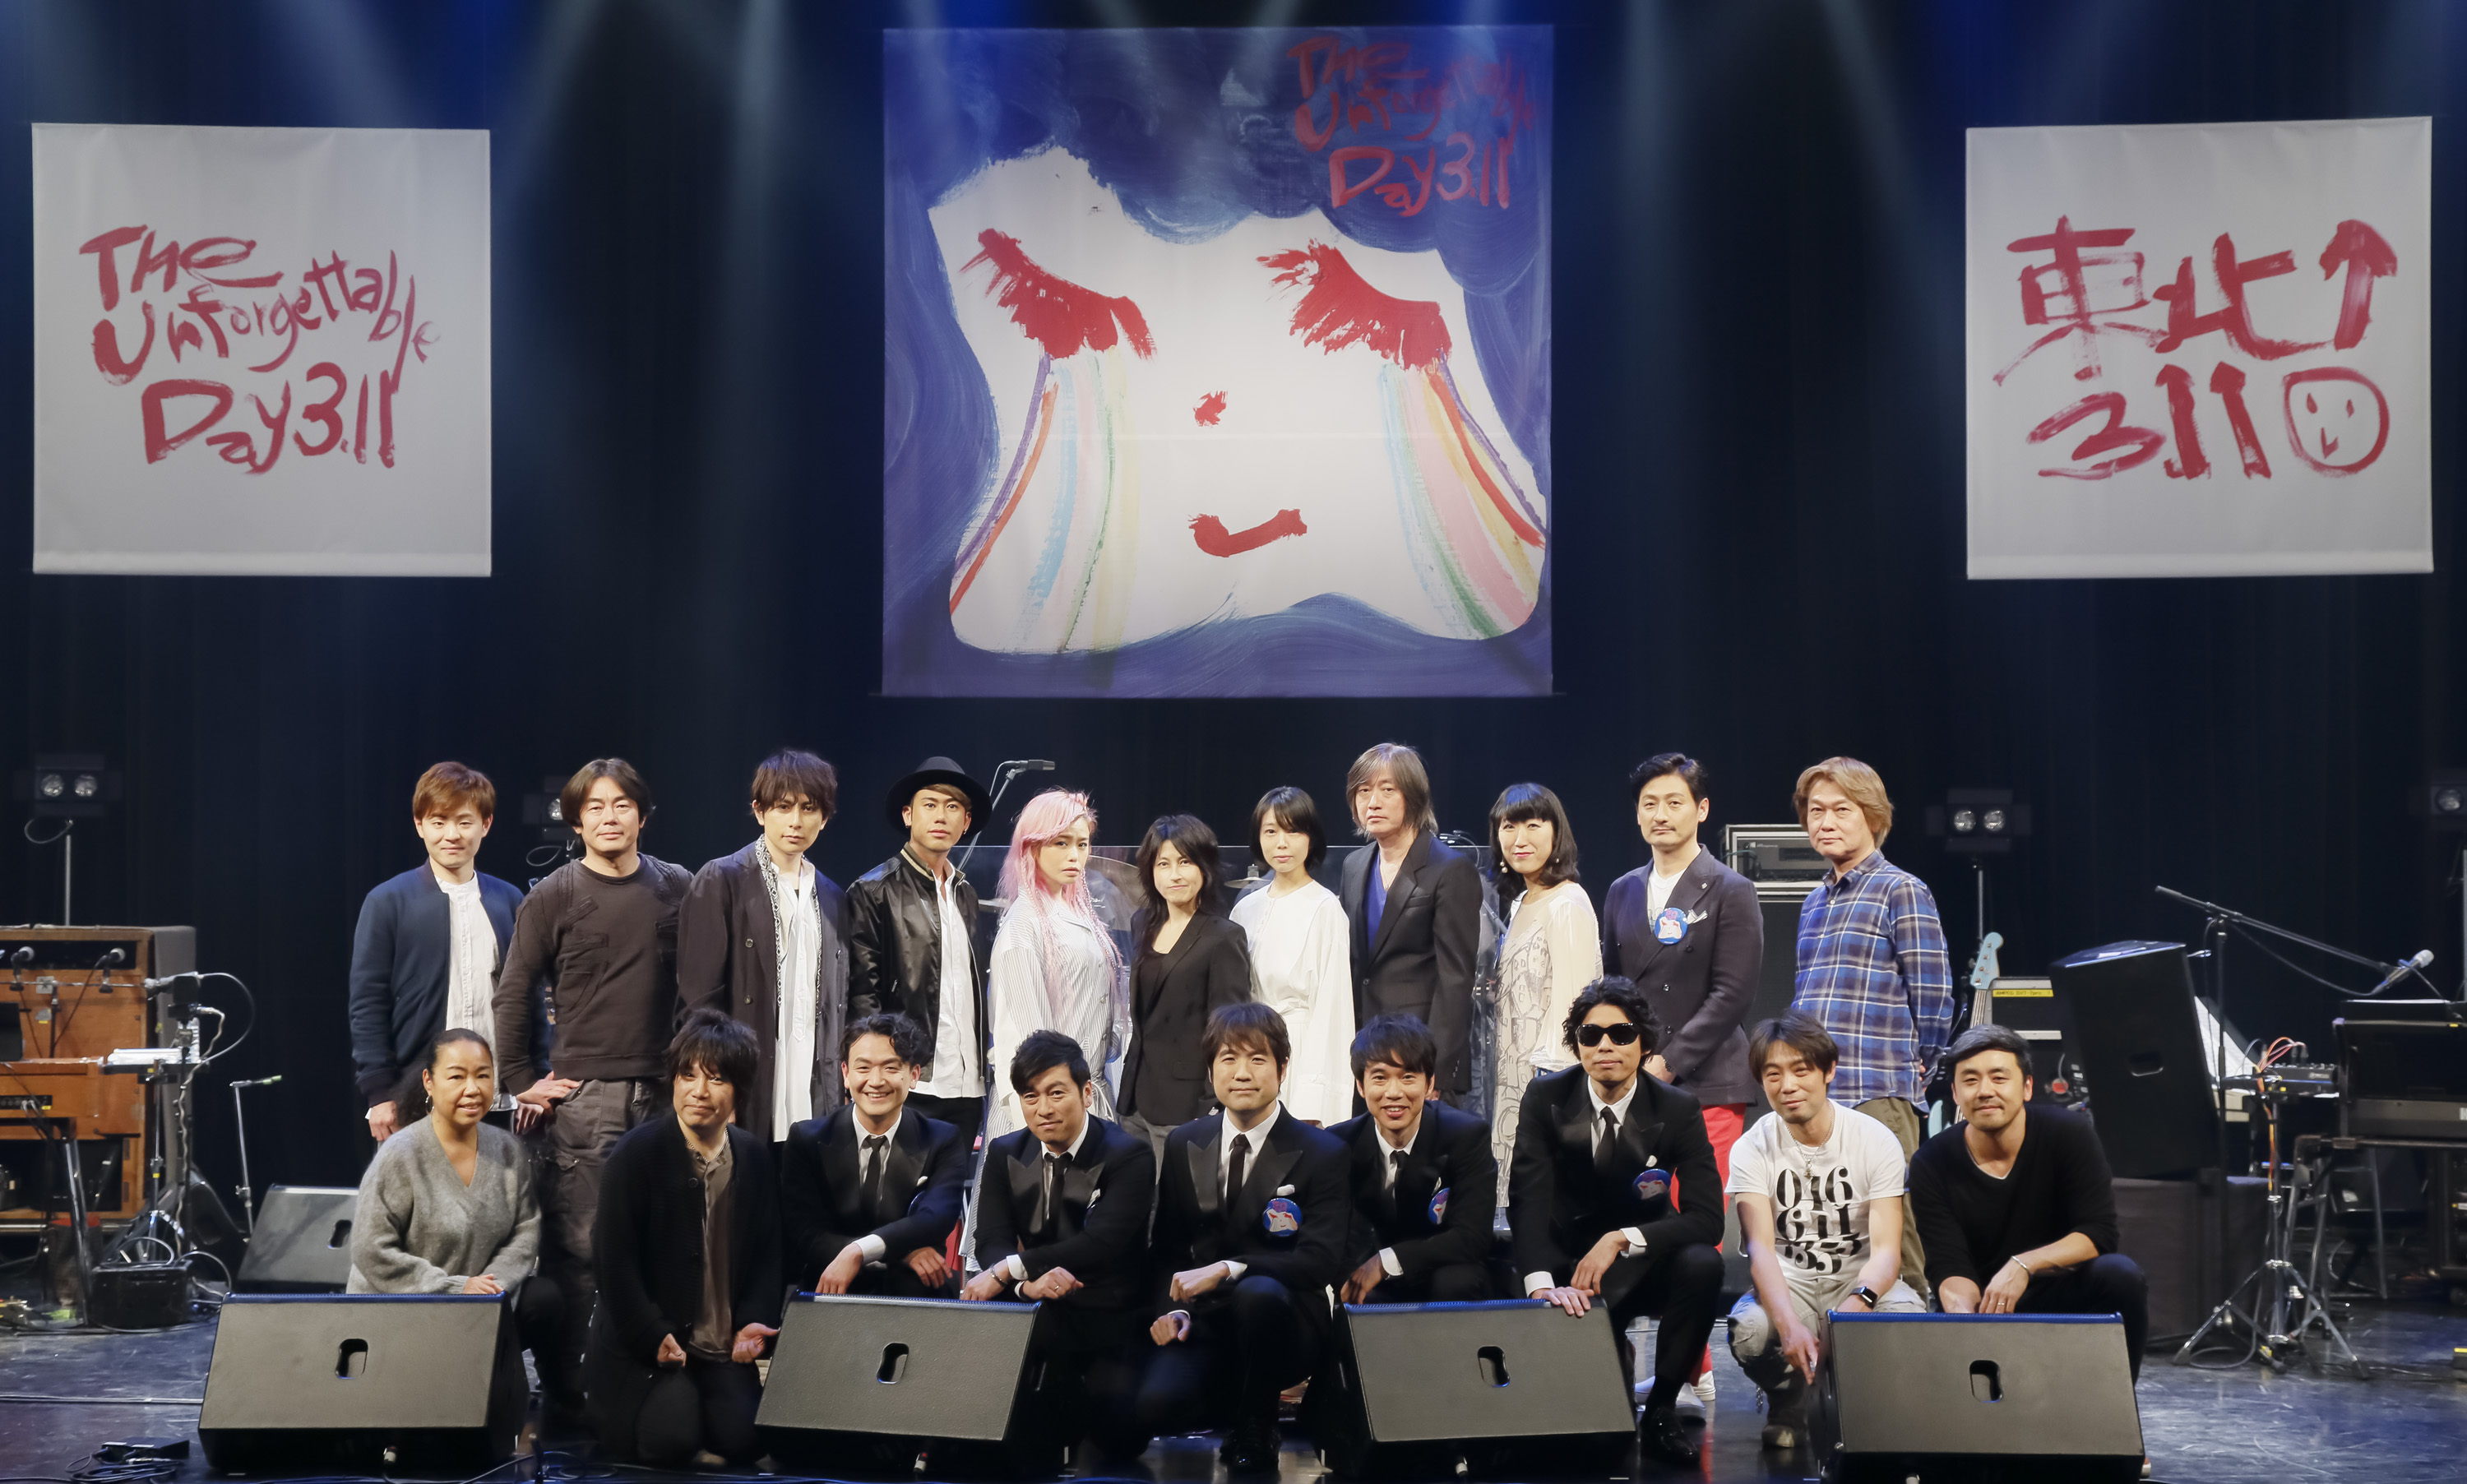 震災復興応援ライブ The Unforgettable Day 3.11」 仙台PITに7組のアーティストが集結！ | ミュージックブースター